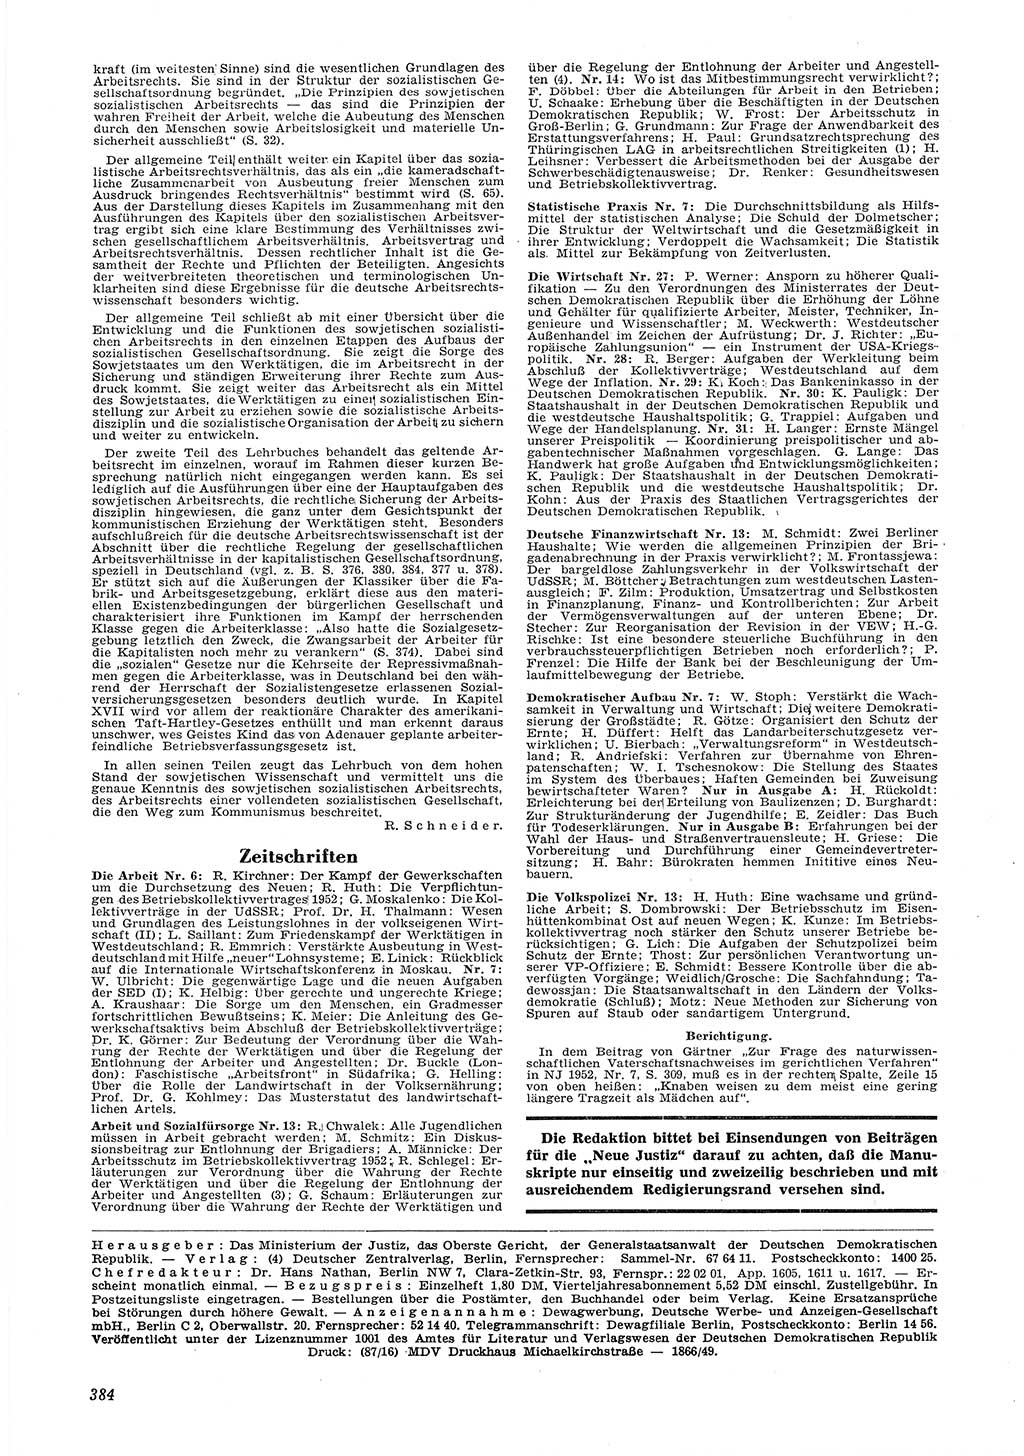 Neue Justiz (NJ), Zeitschrift für Recht und Rechtswissenschaft [Deutsche Demokratische Republik (DDR)], 6. Jahrgang 1952, Seite 384 (NJ DDR 1952, S. 384)